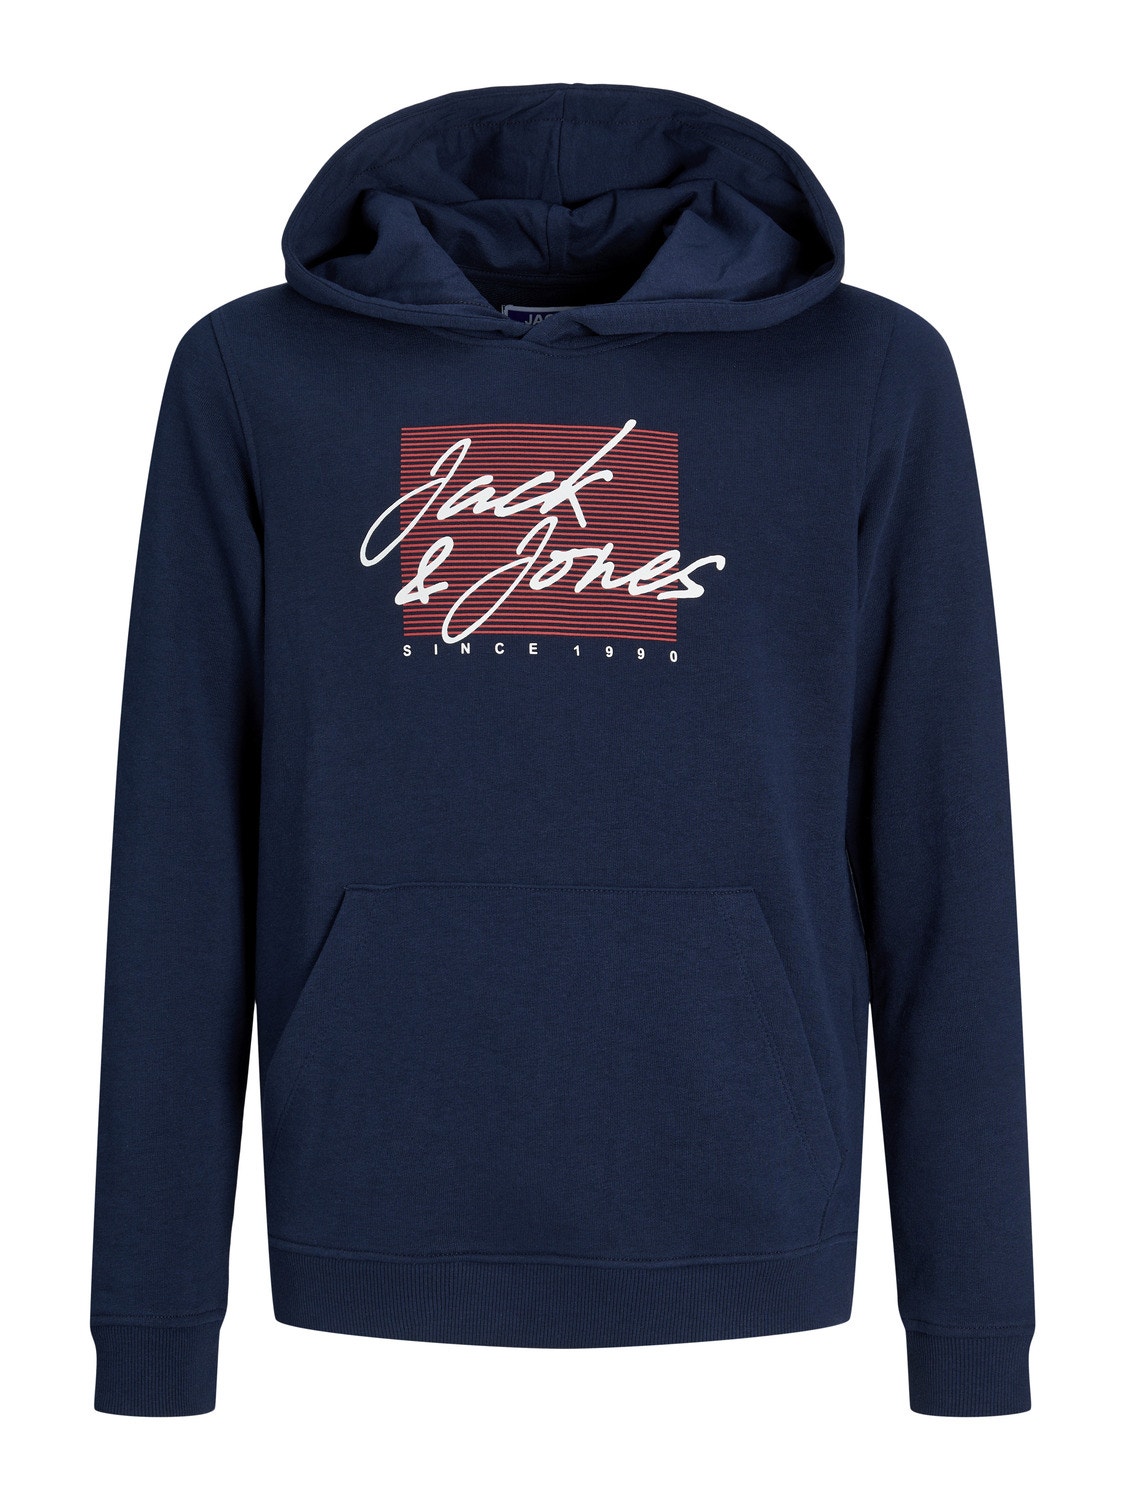 Jack & Jones Printed Hoodie For boys -Navy Blazer - 12249874